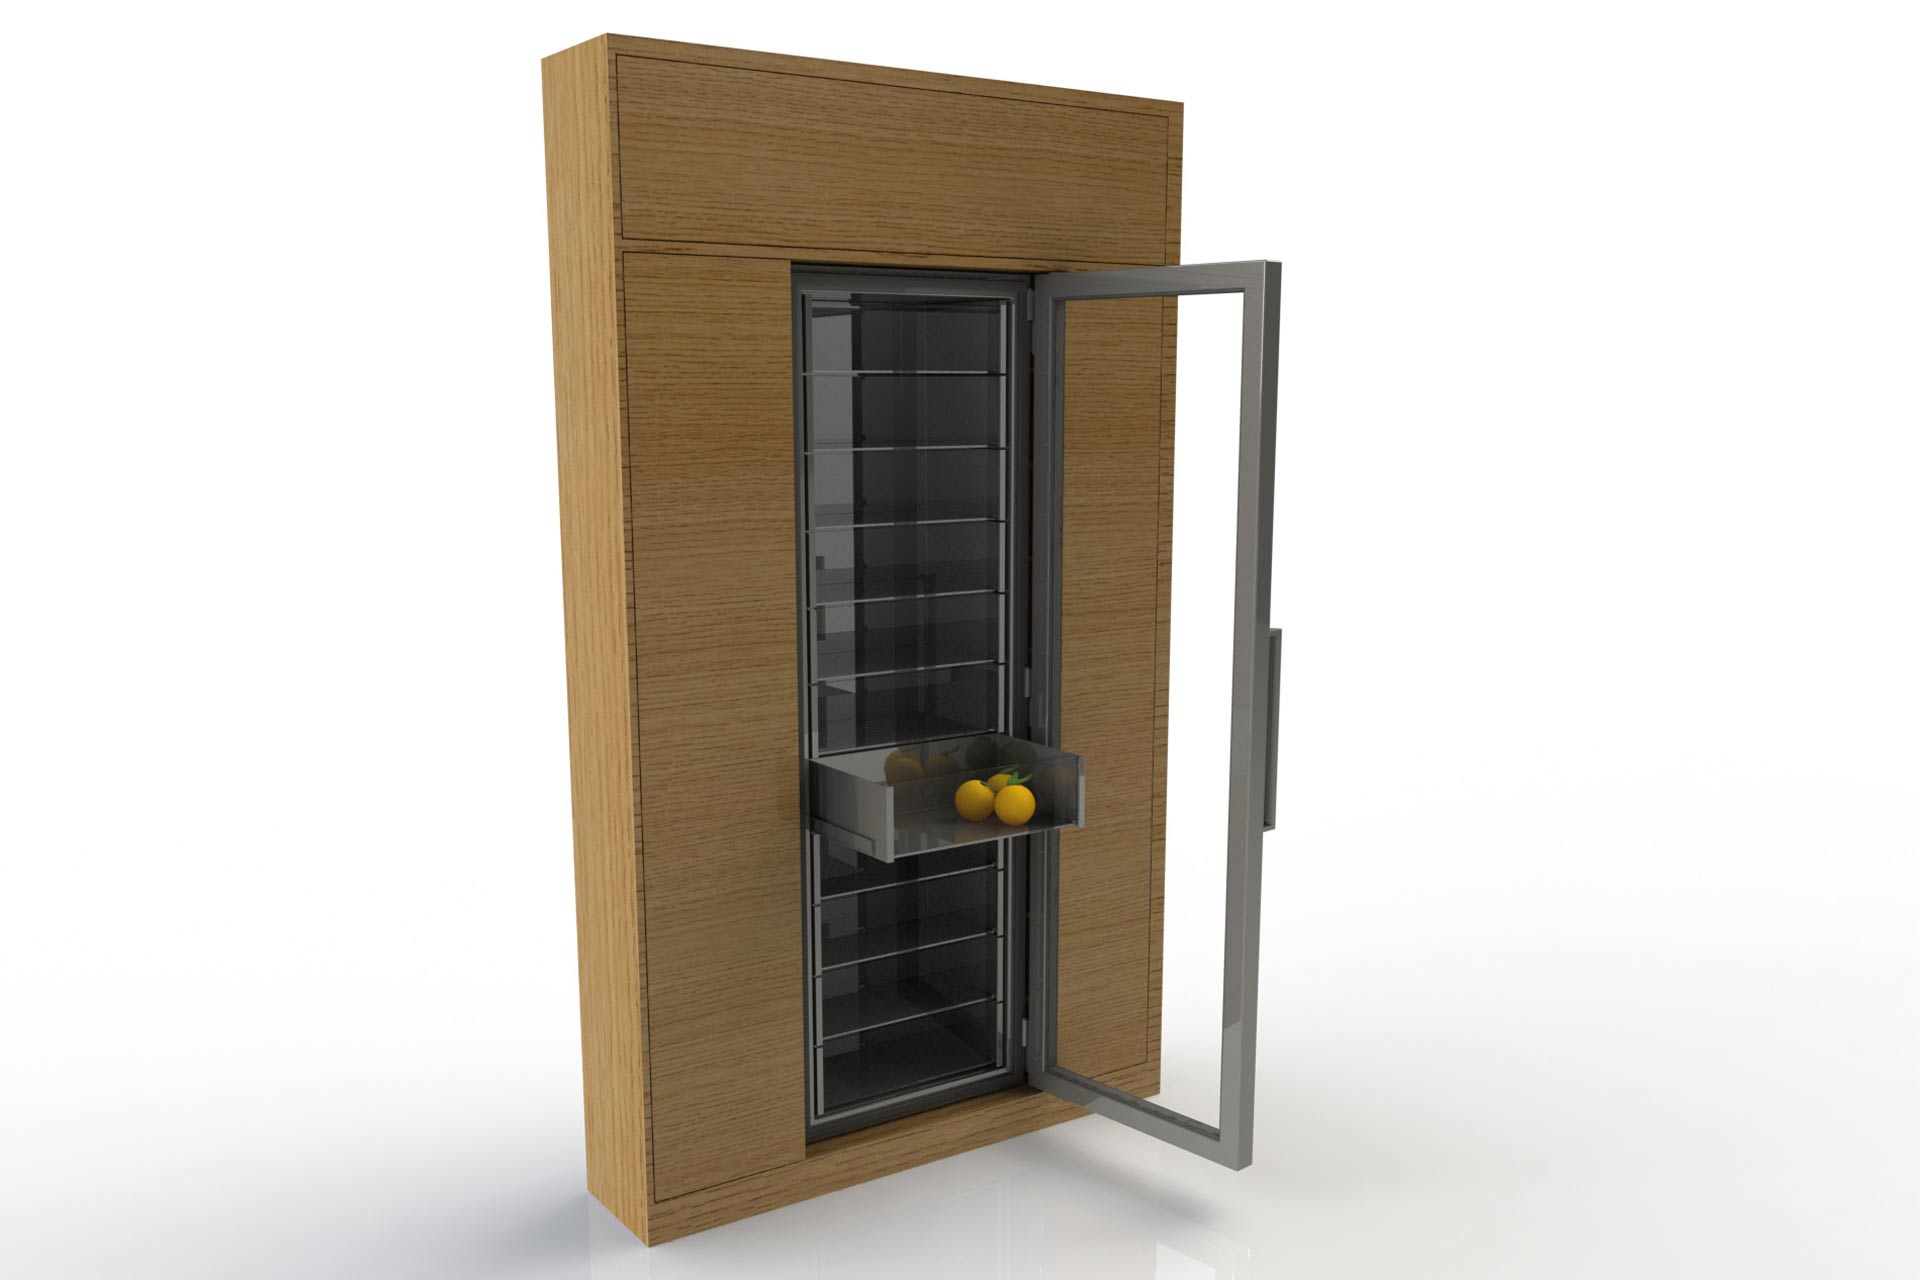 A fancy fridge CAD model